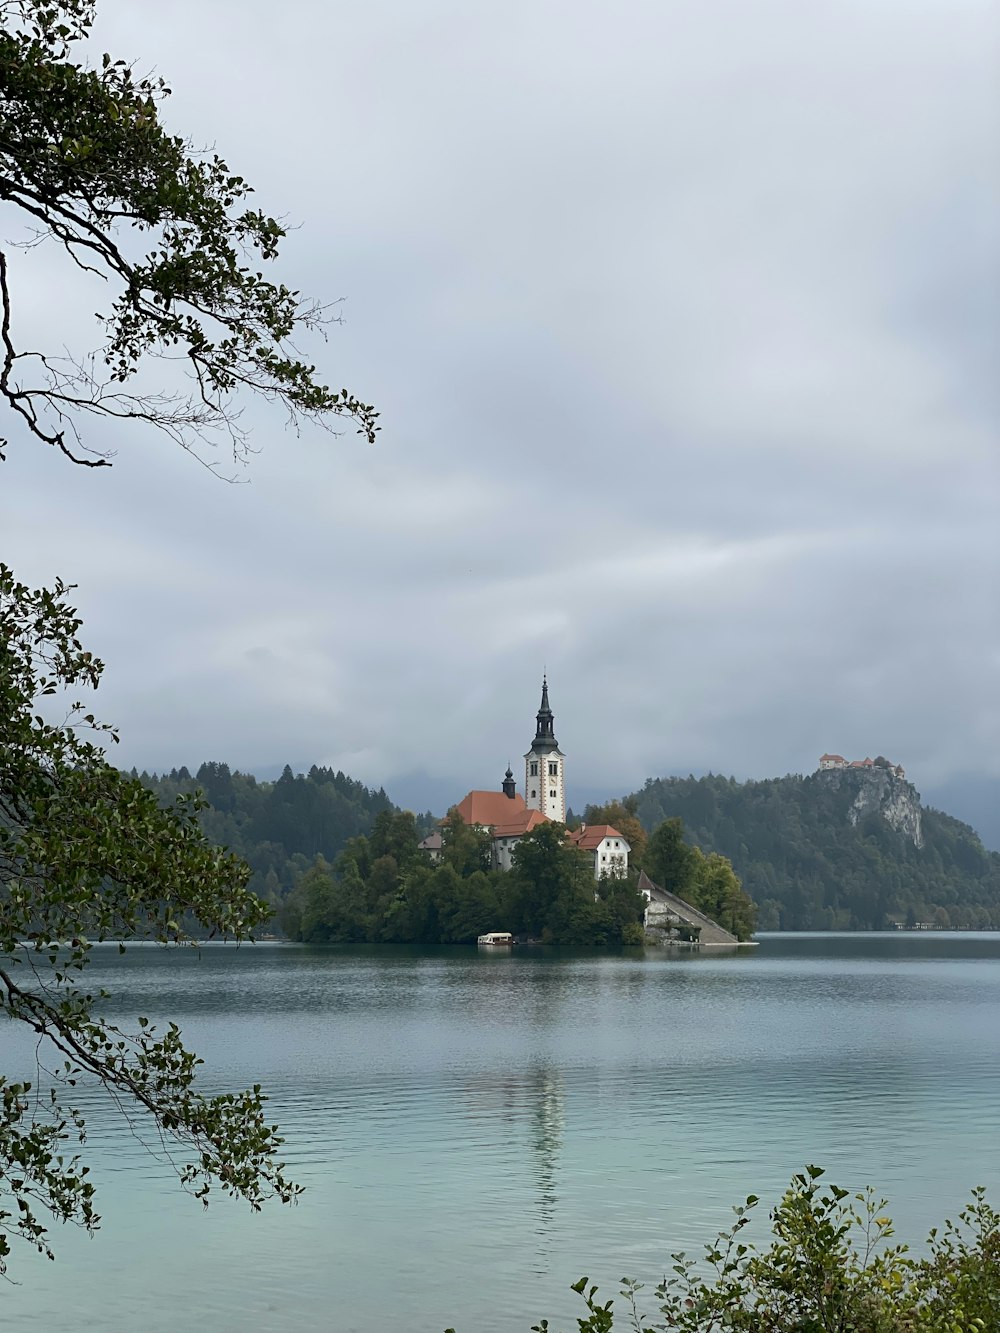 Una iglesia en una pequeña isla en medio de un lago